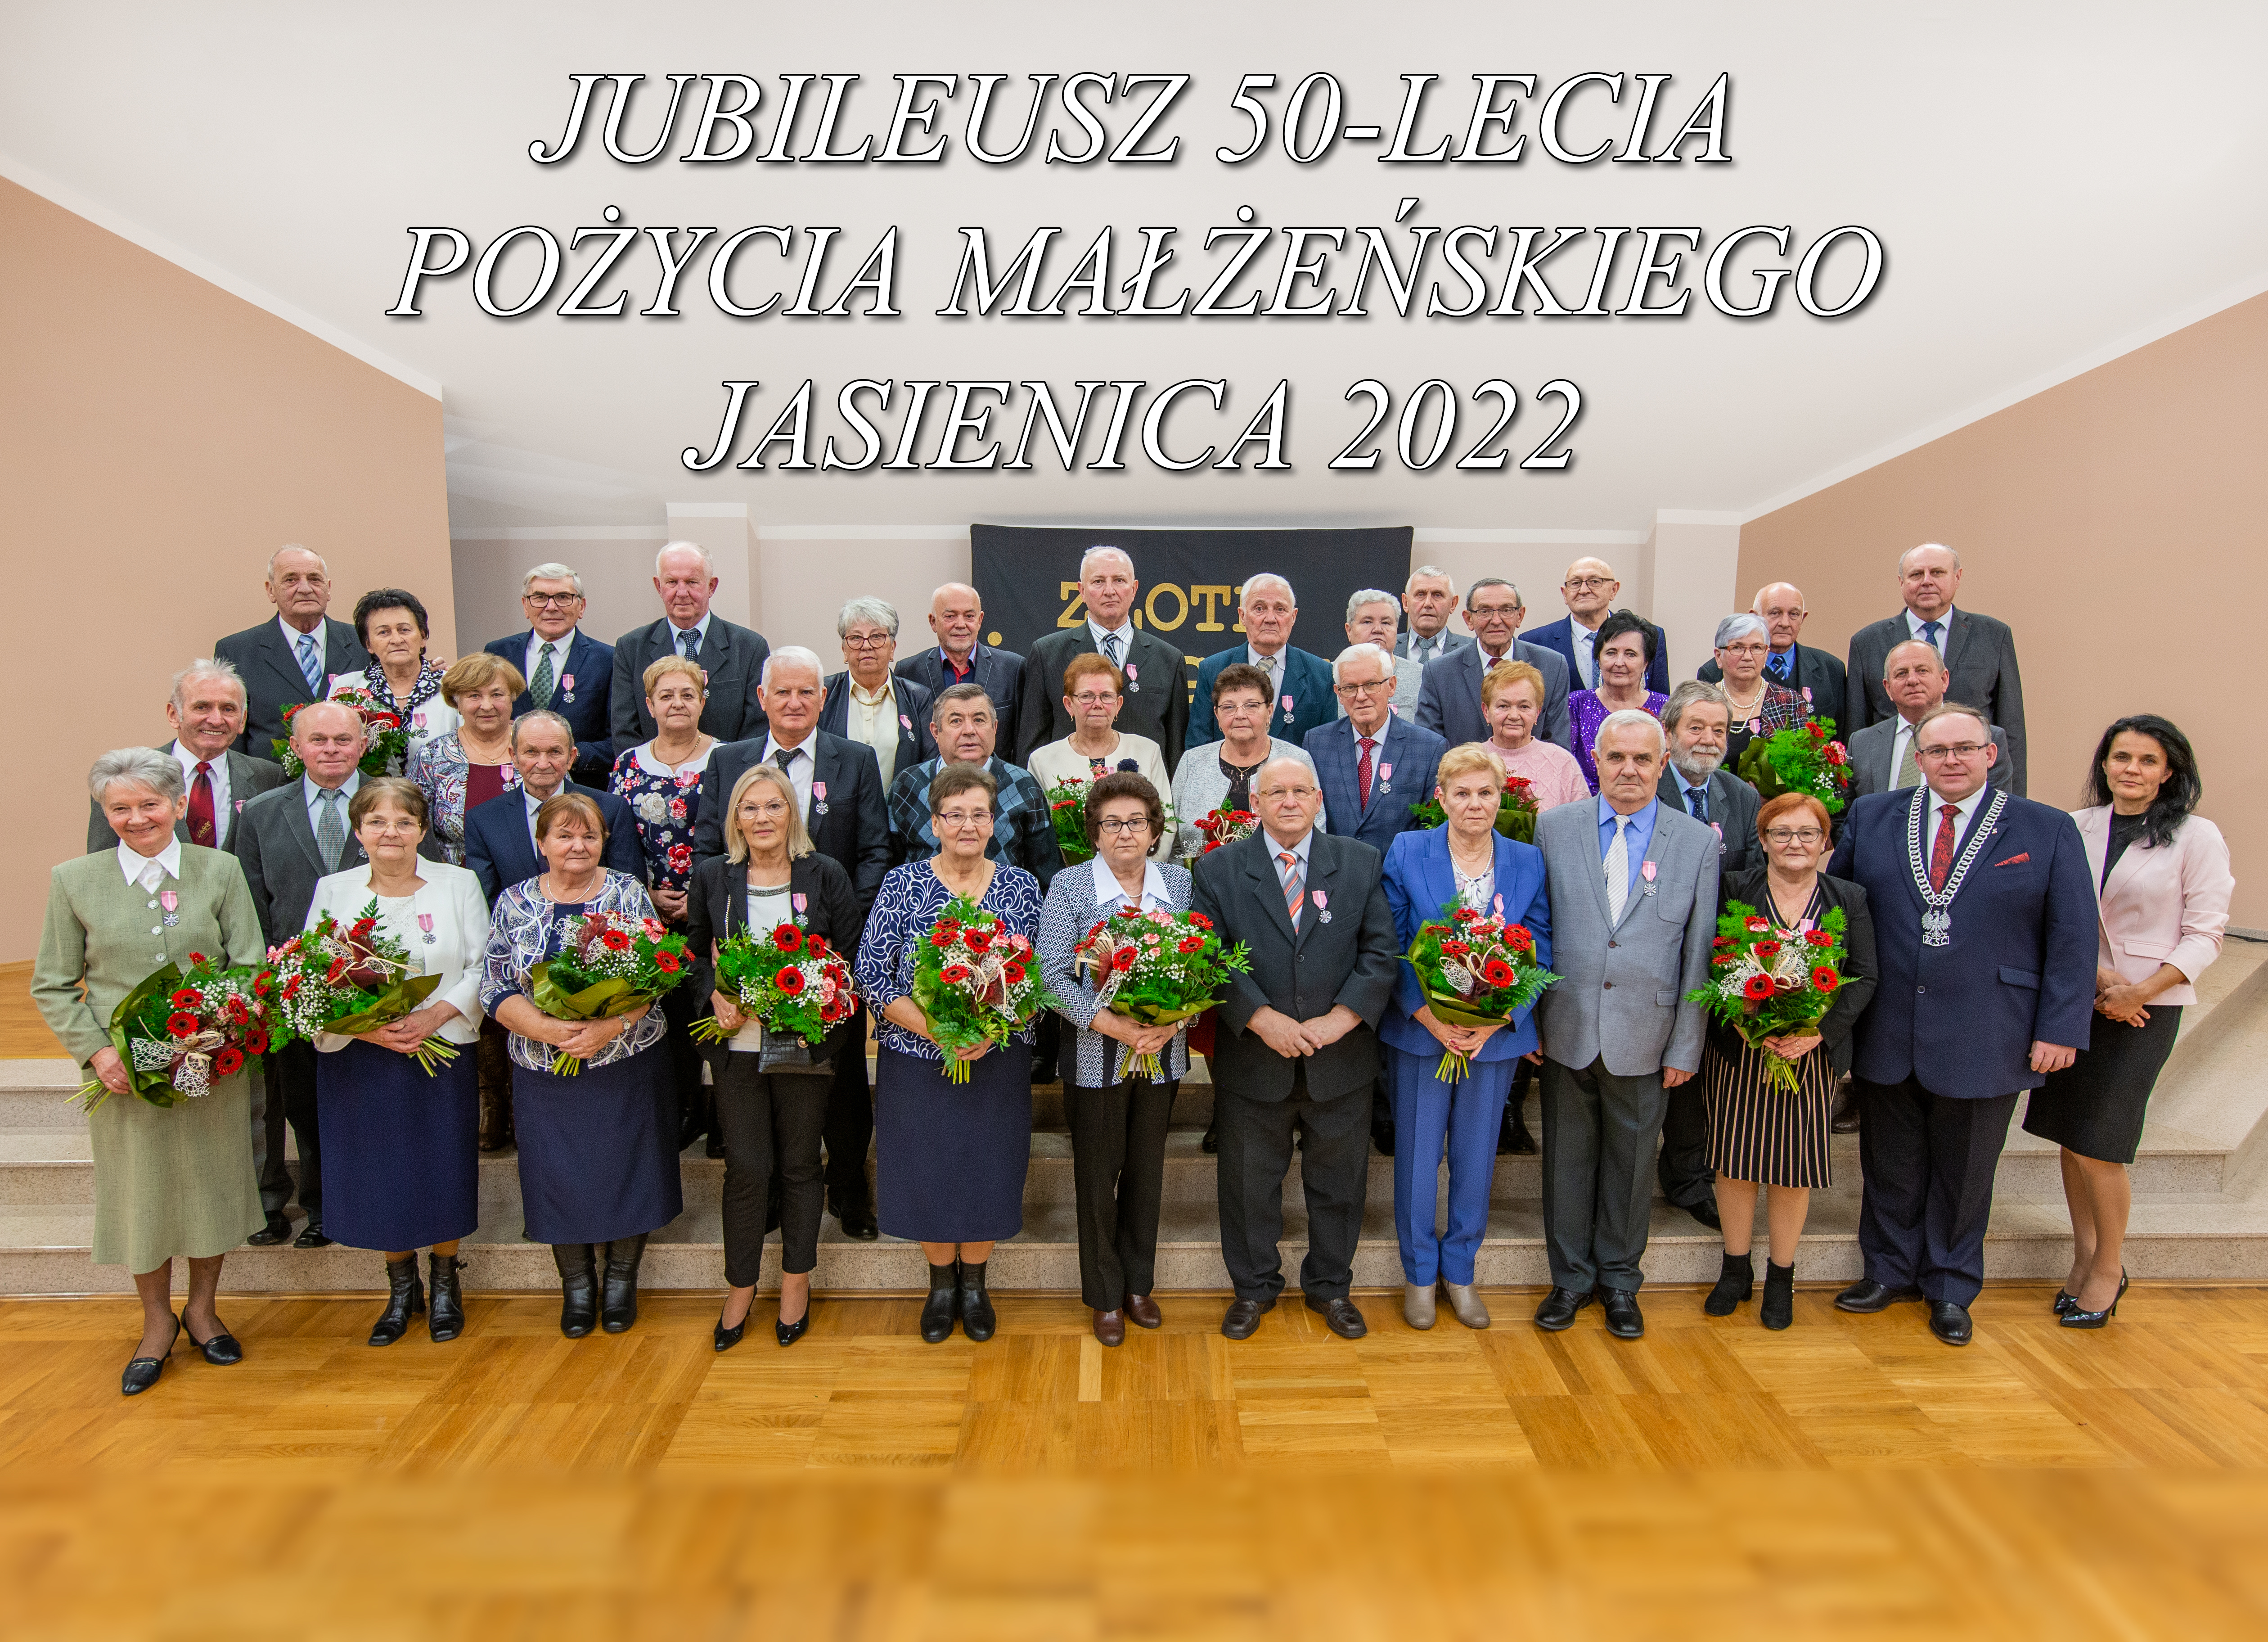 Pary małżeńskie uhonorowane medalami przyznanymi przez Prezydenta RP Andrzeja Dudę, które wręczył wójt Janusz Pierzyna.